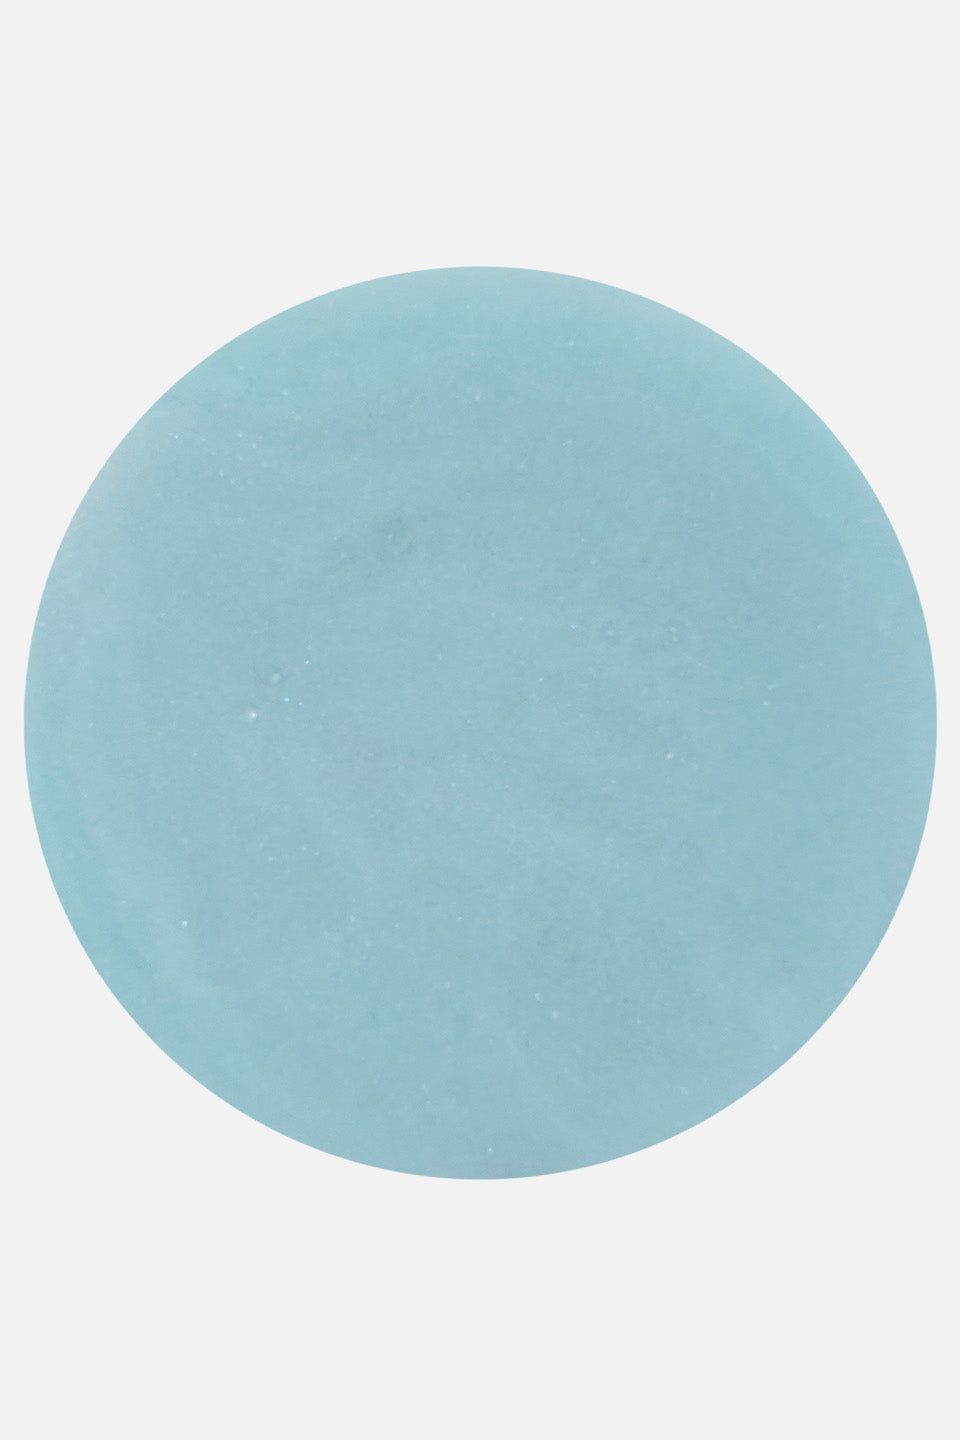 Polvere acrilica azzurro pastello 5 g